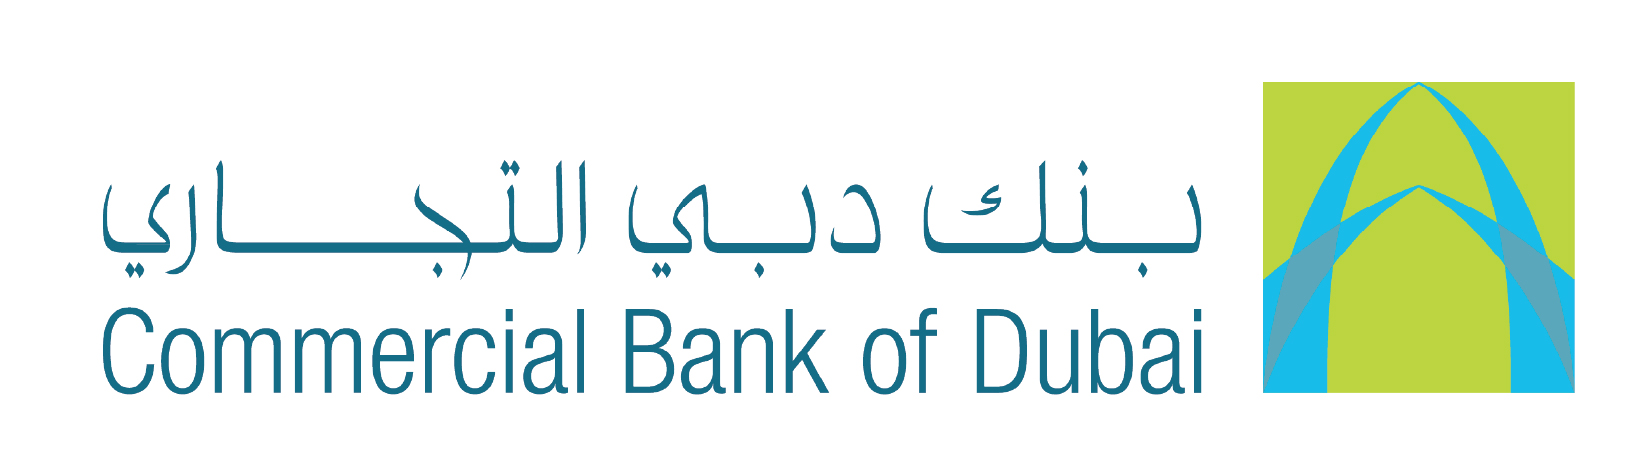 Commercial Bank of Dubai@4x-100